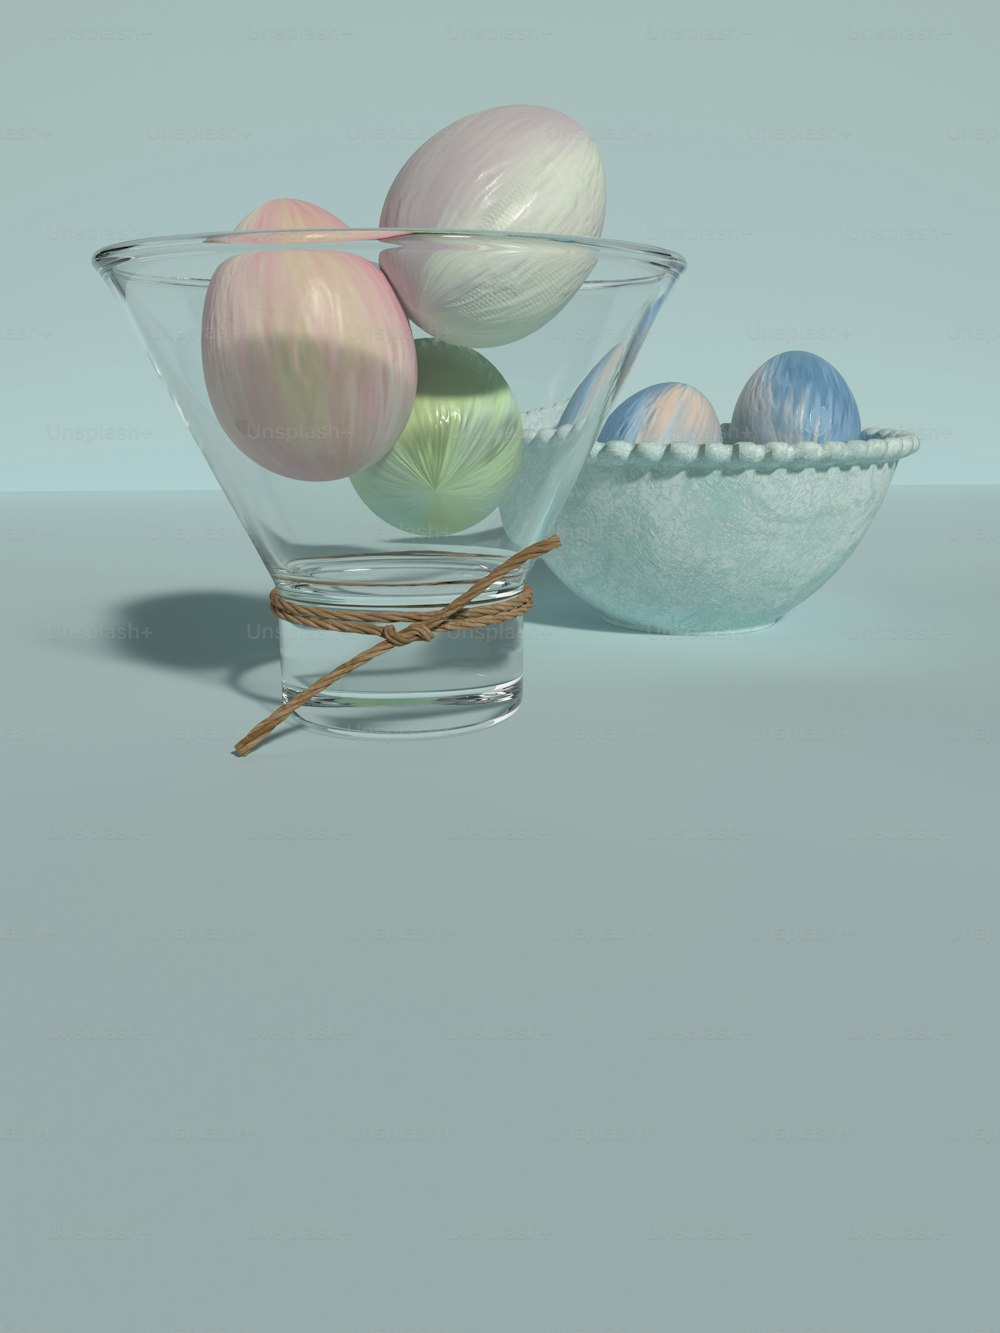 Un tazón de vidrio lleno de huevos encima de una mesa